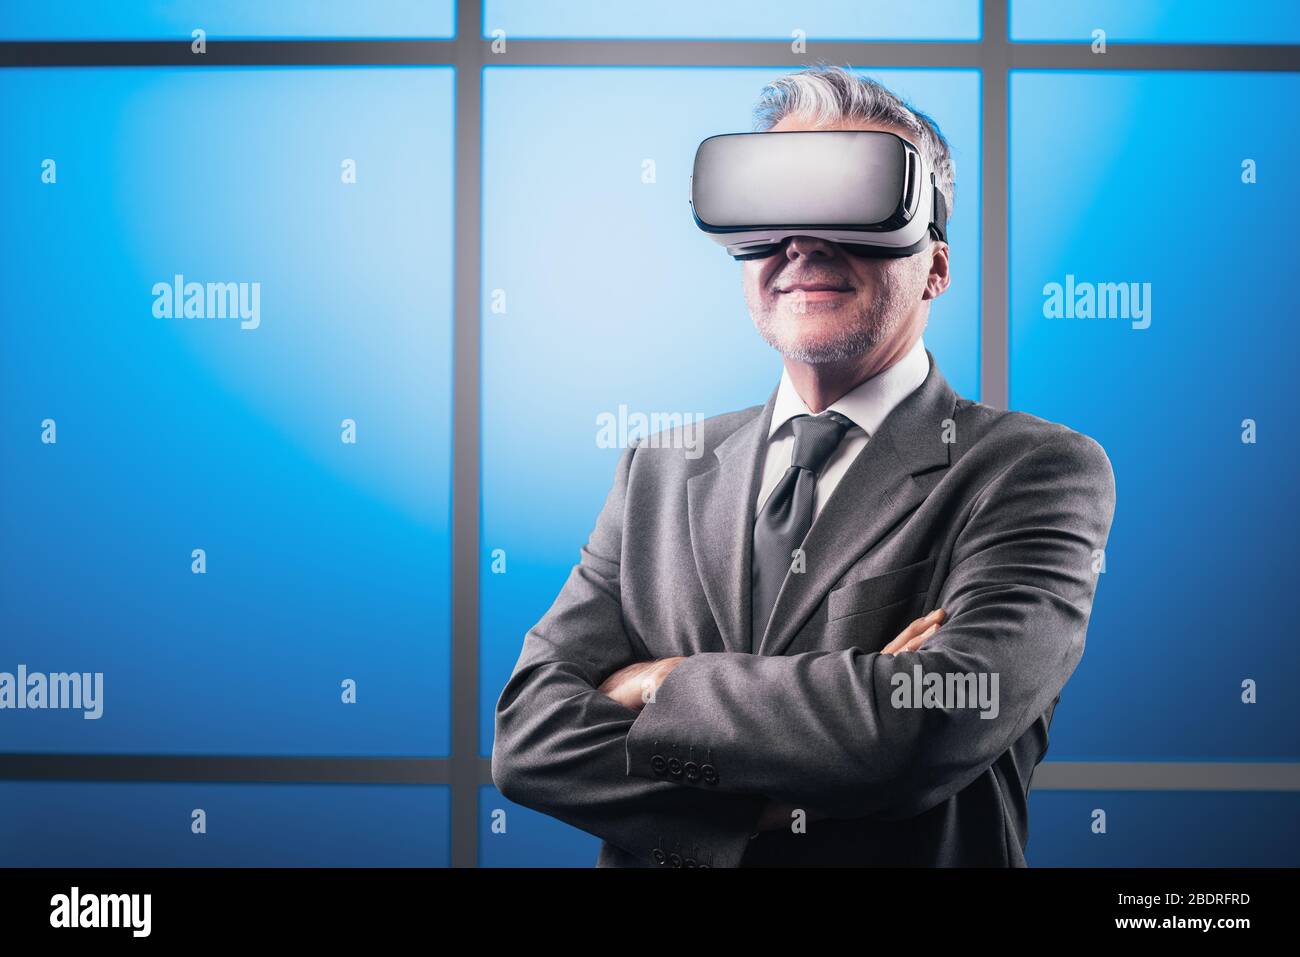 Homme d'affaires éprouvé et confiant, confronté à une réalité virtuelle, il porte un casque VR et souriant Banque D'Images